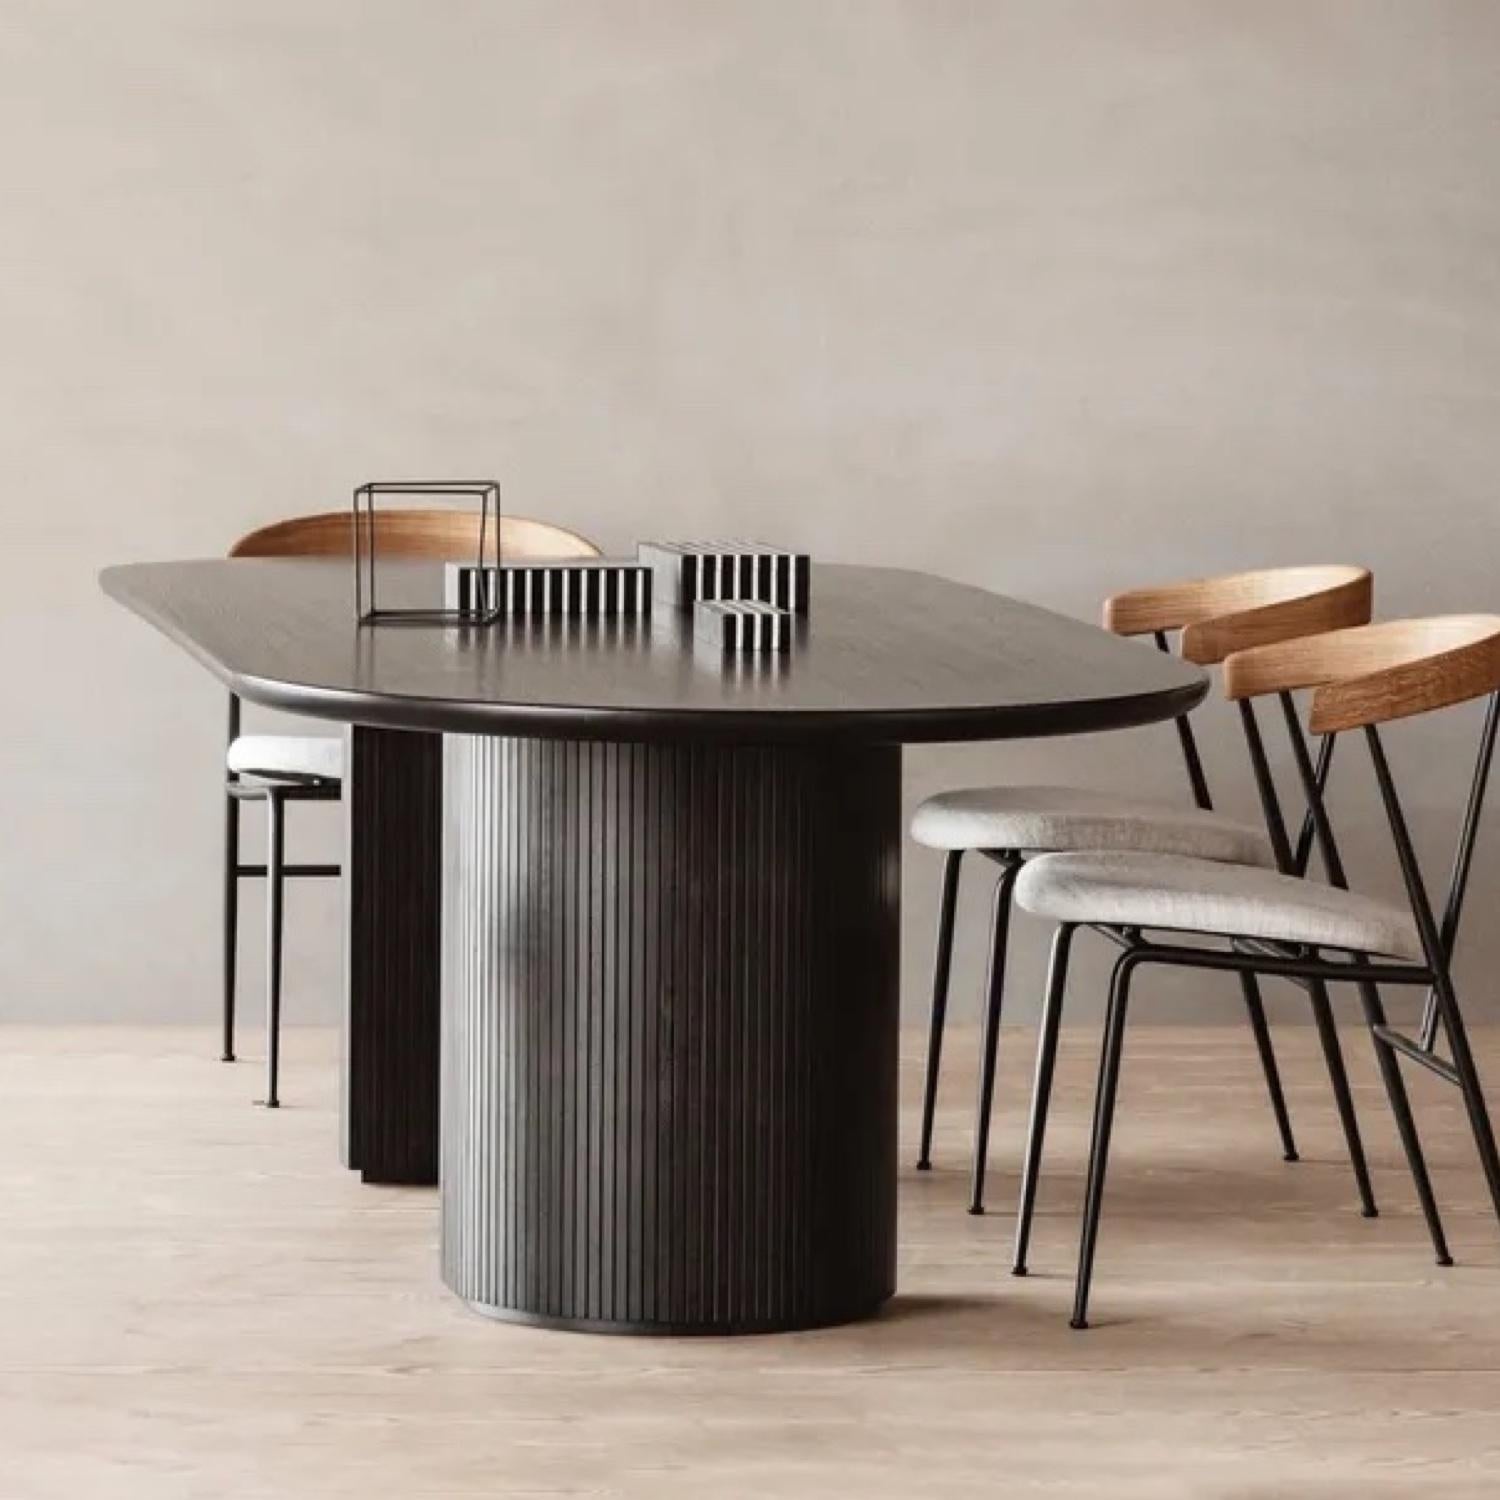 Space Copenhagen est le créateur de la table à manger Classic Moon, une série de tables arrondies et organiques destinées aux espaces domestiques et publics. L'interaction entre le magnifique plateau en chêne massif et la base lisse en forme de